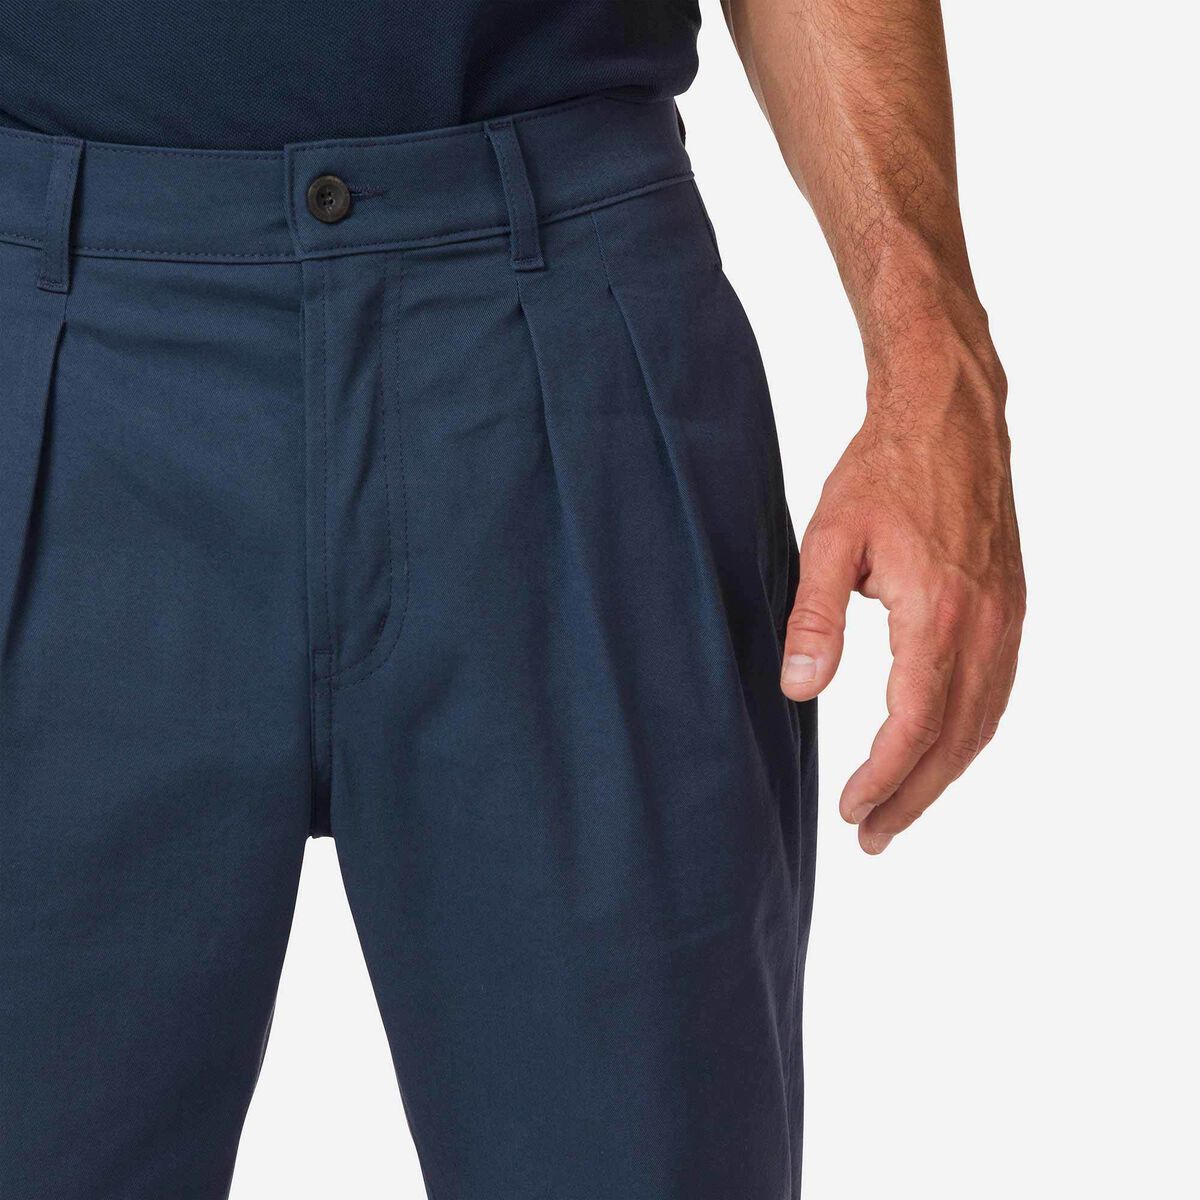 Pantalones chinos de algodón orgánico para hombre